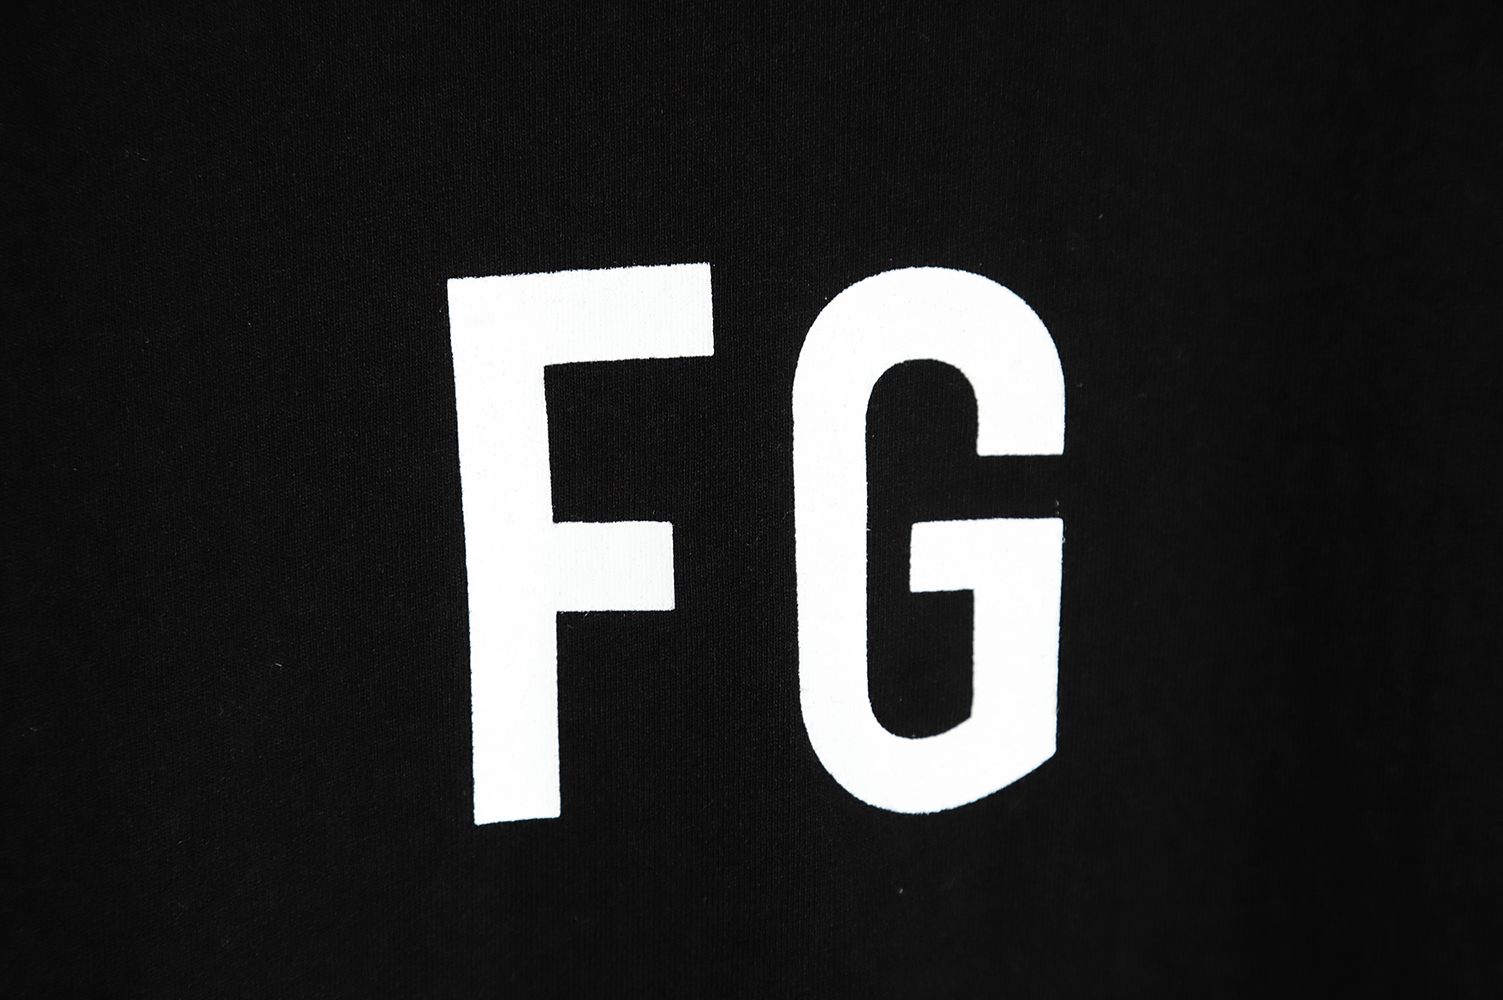 FEAR DF GOD season 6 main line FG letter short-sleeved T-shirt Black